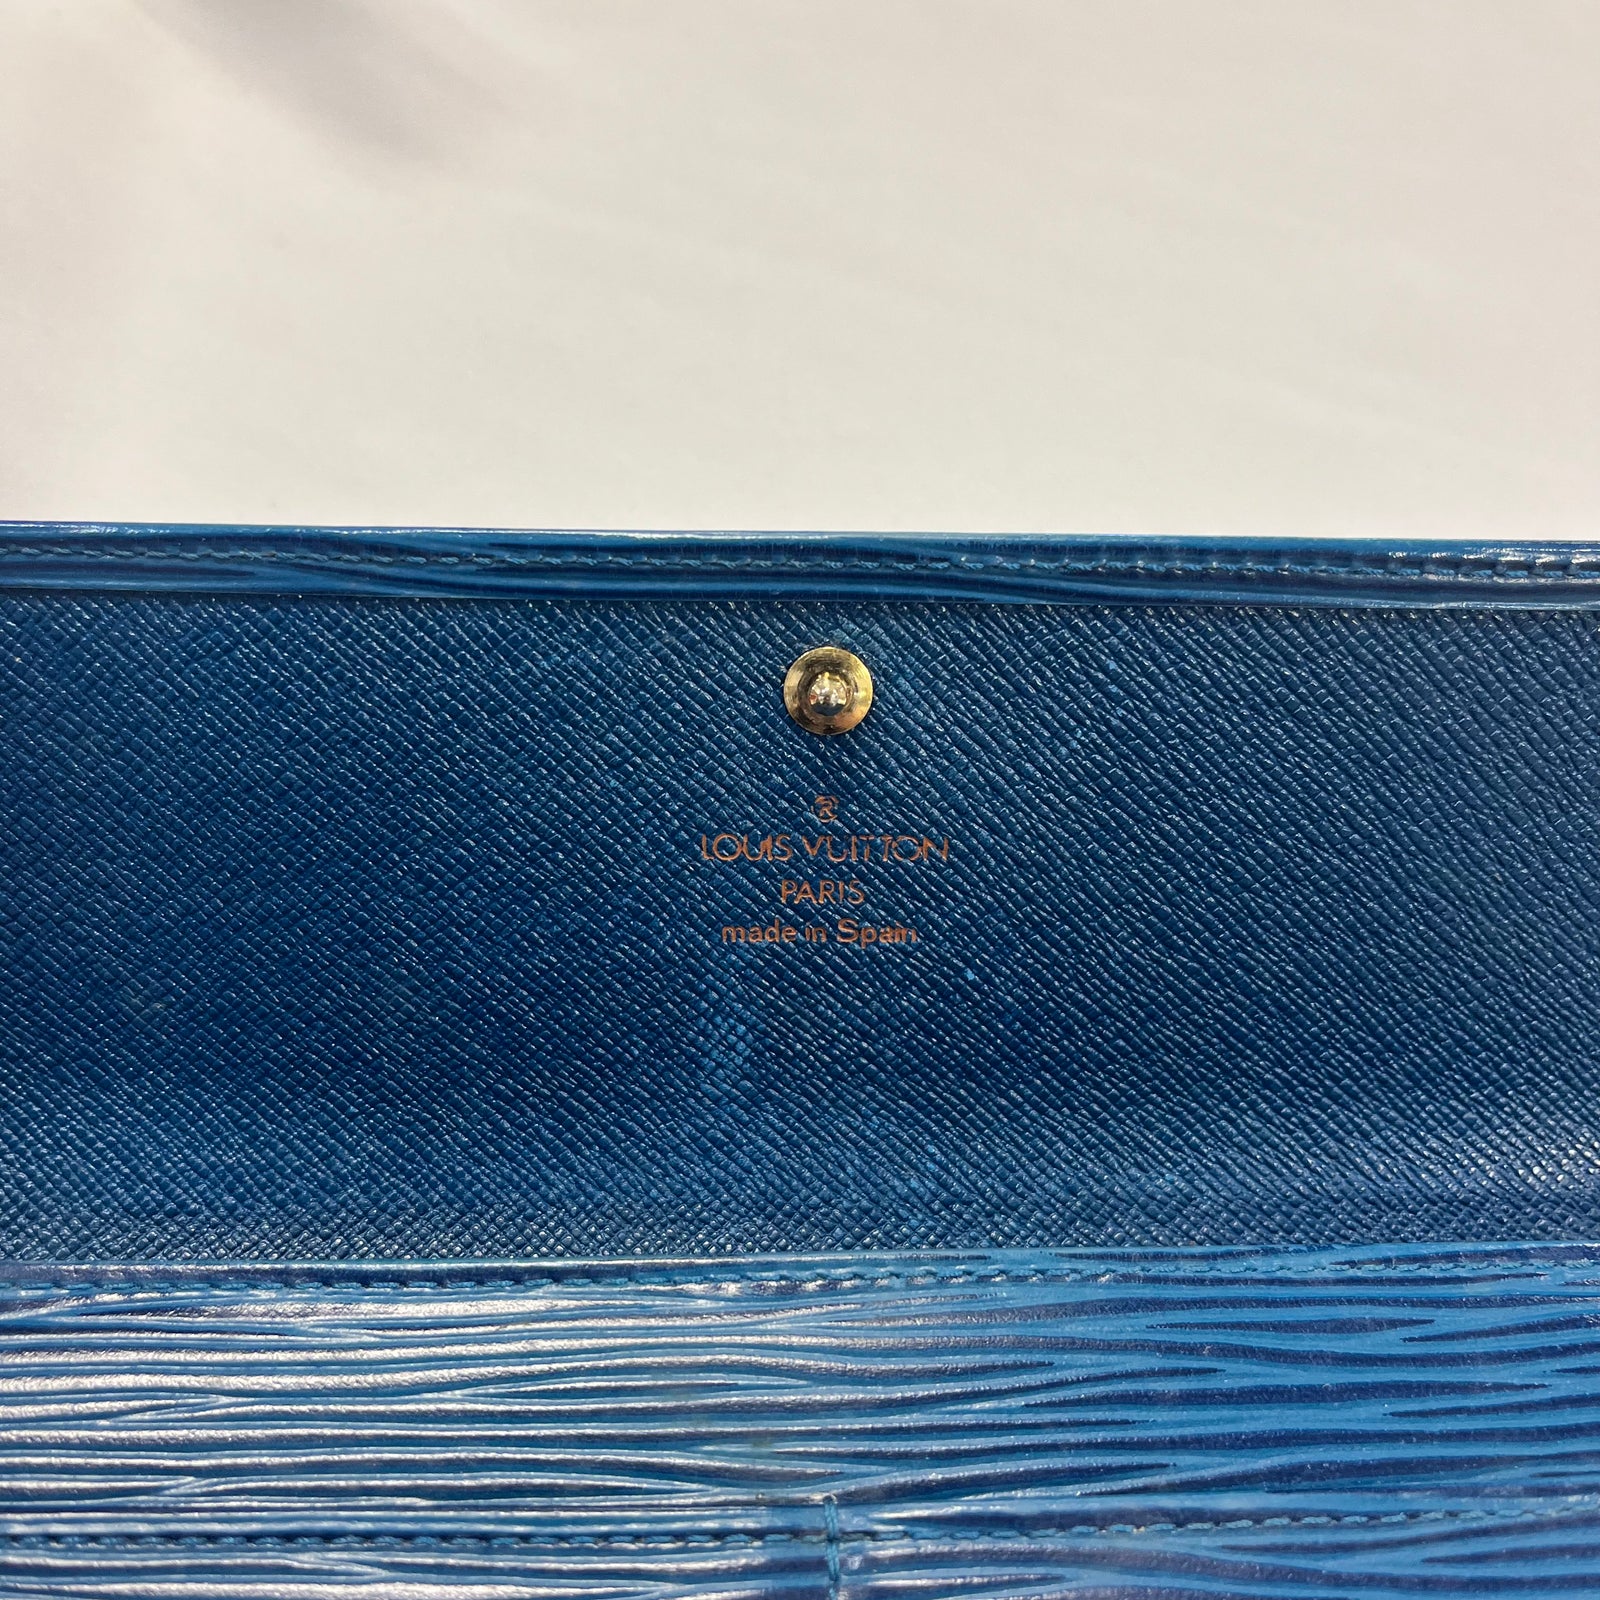 Louis Vuitton Blue Epi Leather Compact Wallet Louis Vuitton